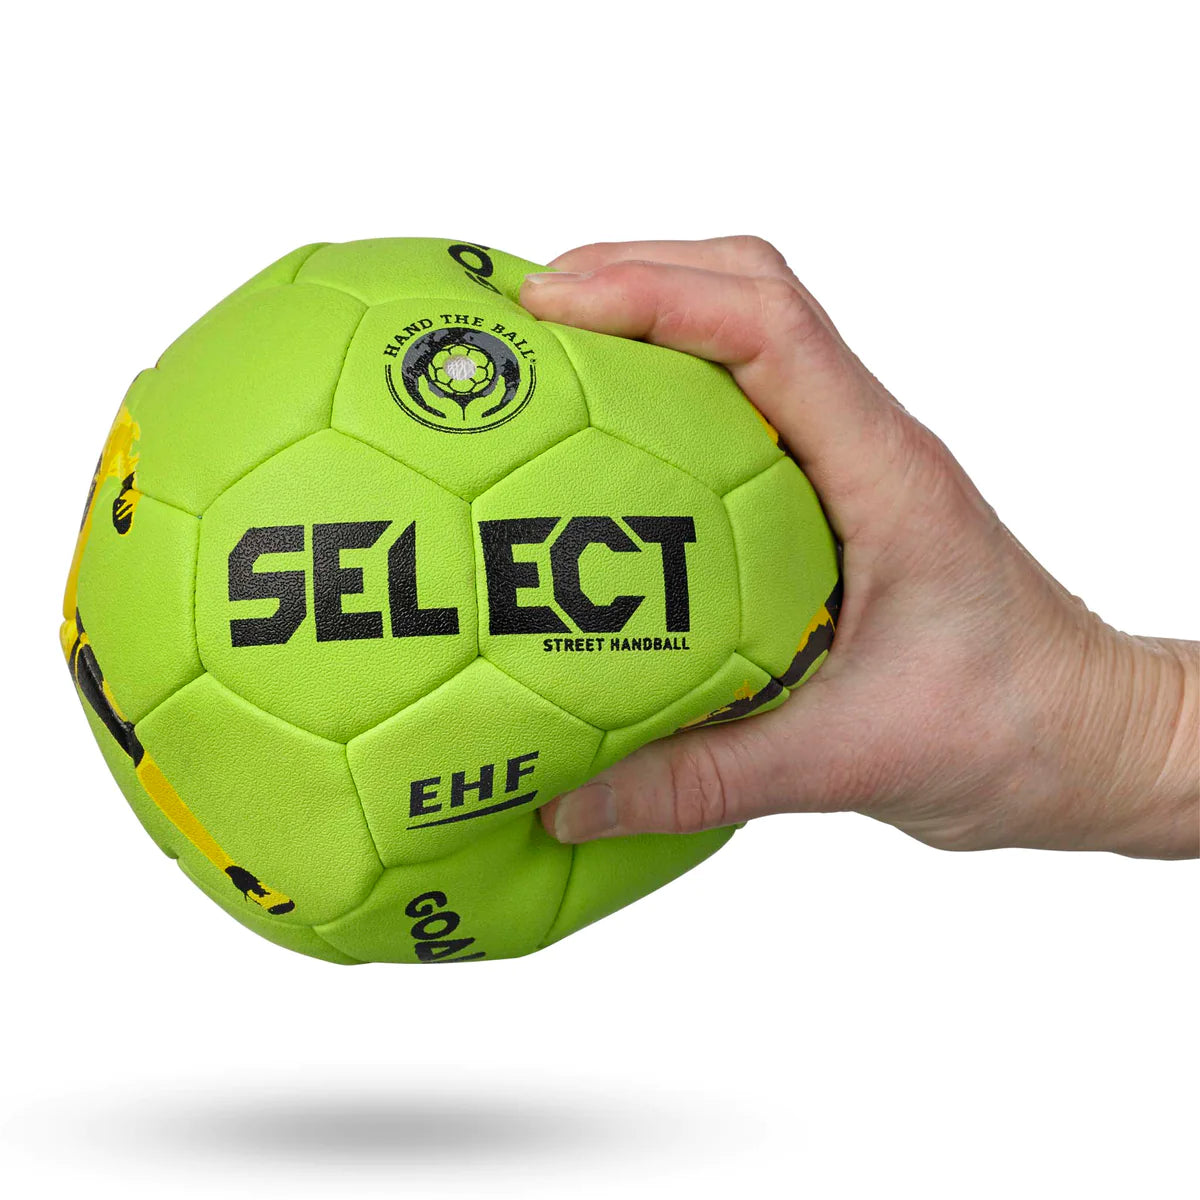 Håndbold Goalcha Street - Grøn - Select